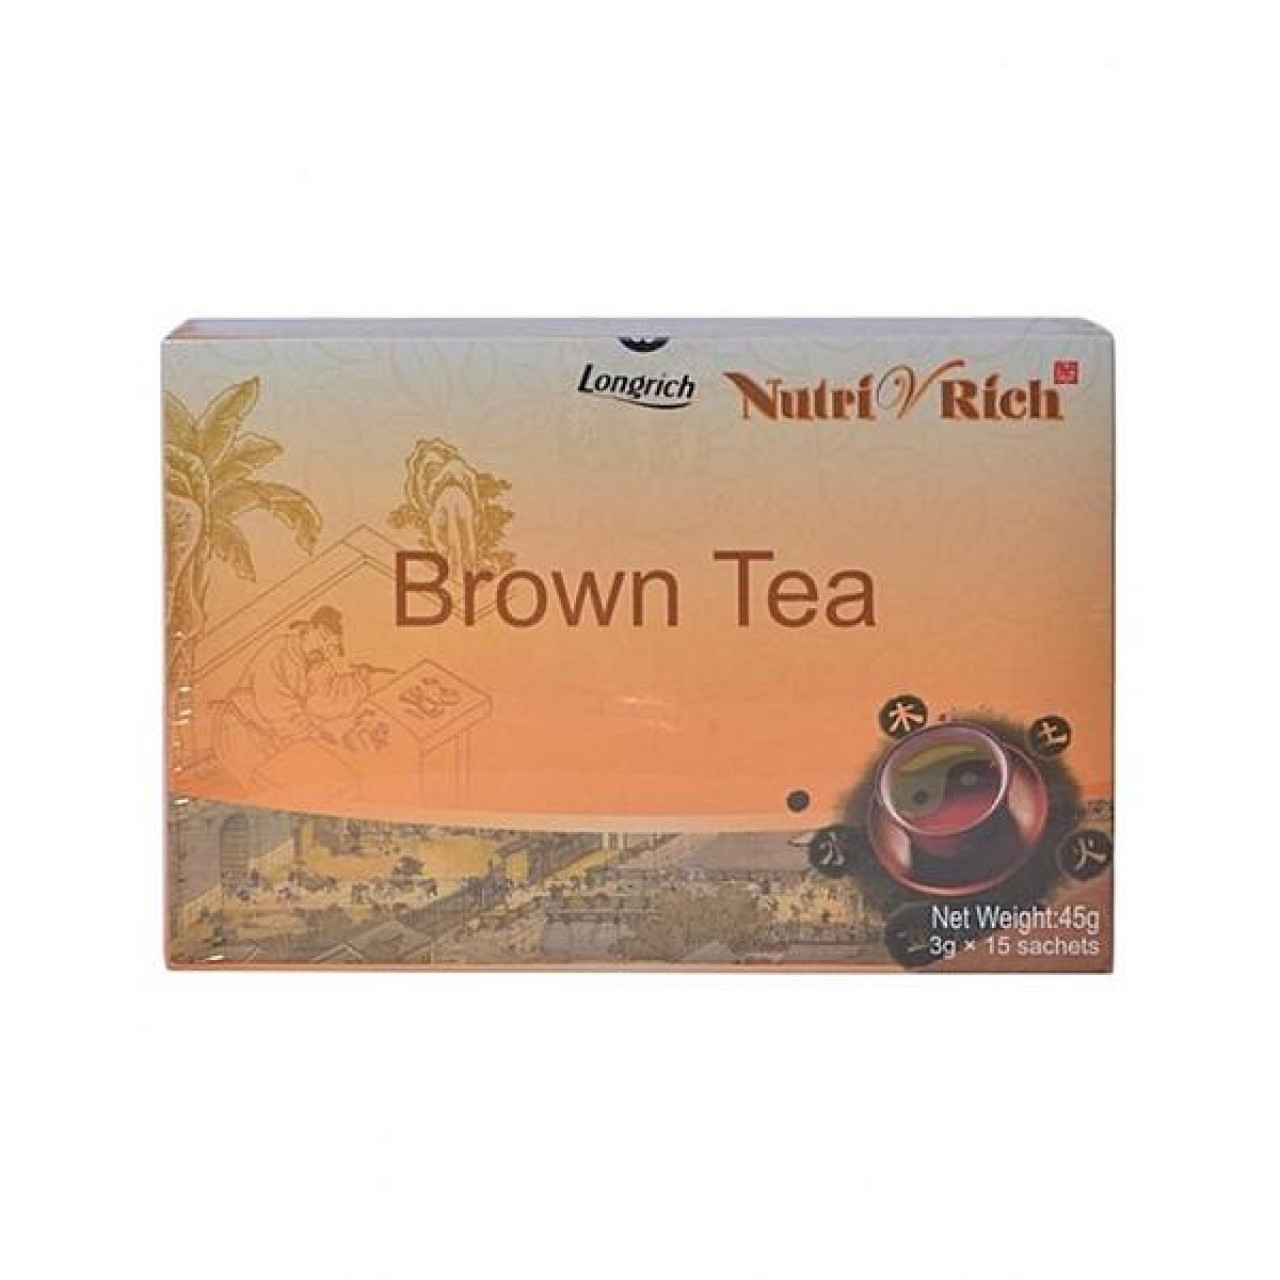 Brown tea, Autre pour Santé - Beauté, Conakry